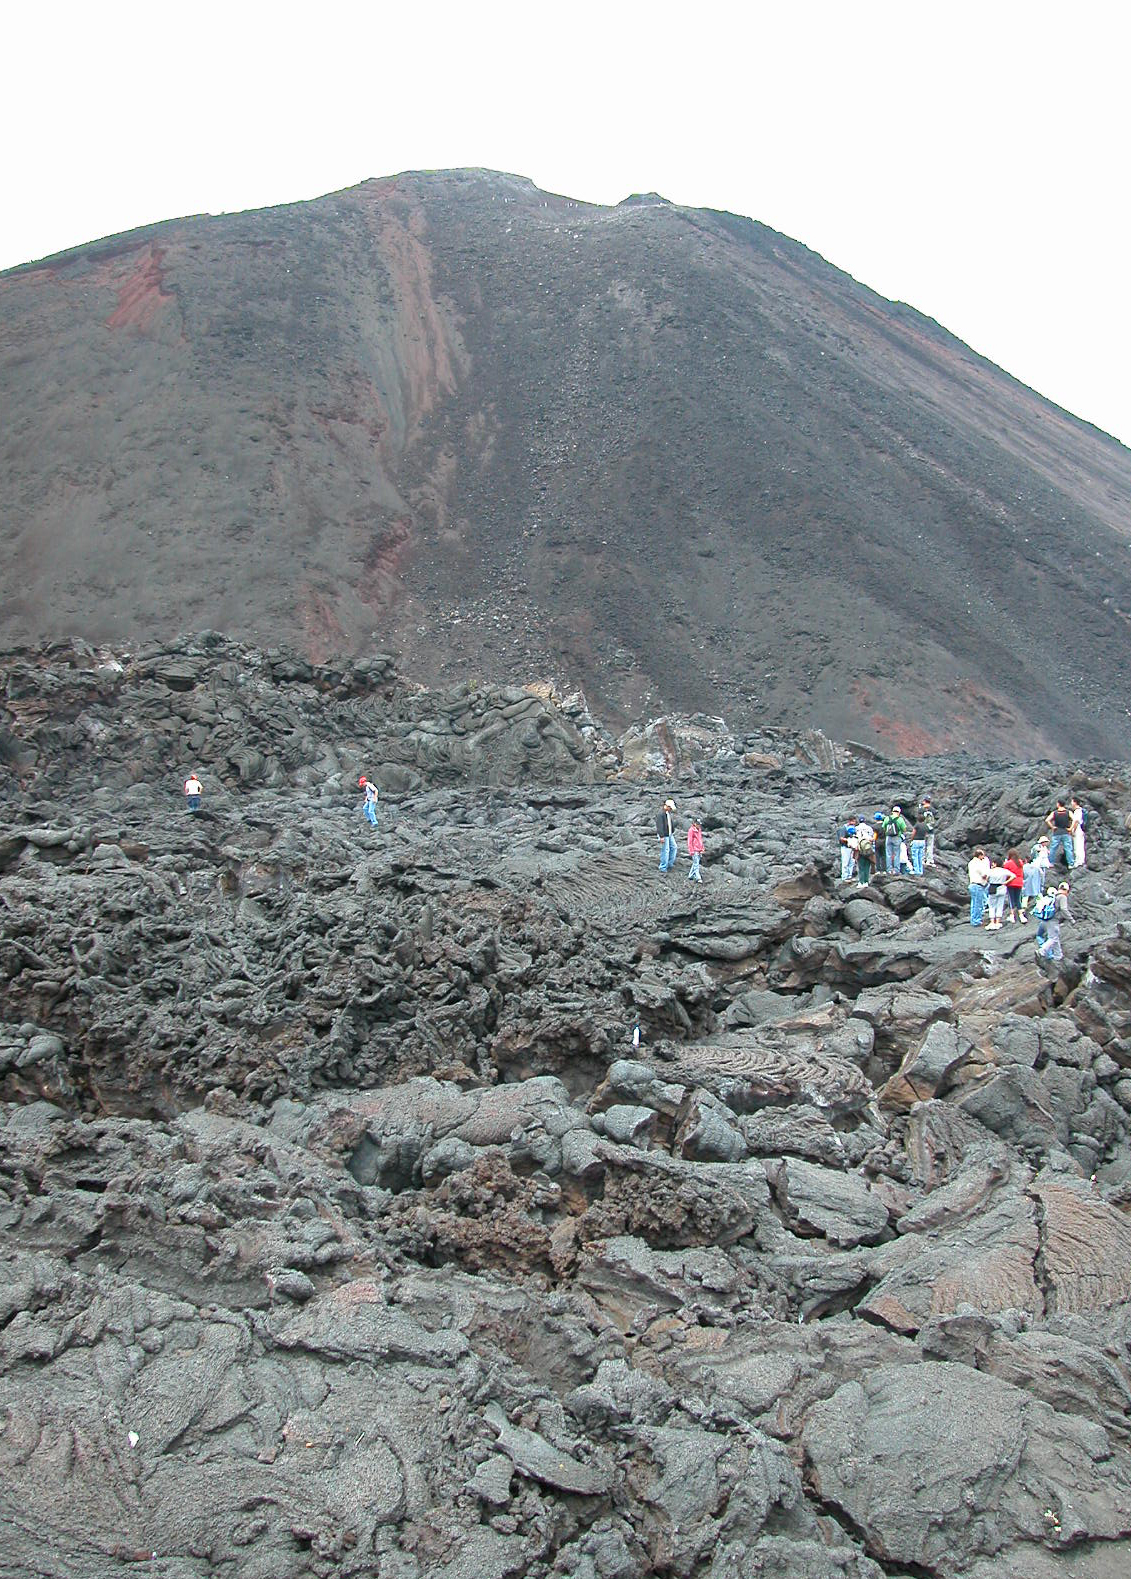 Hiking on Volcan Pacaya, 2006